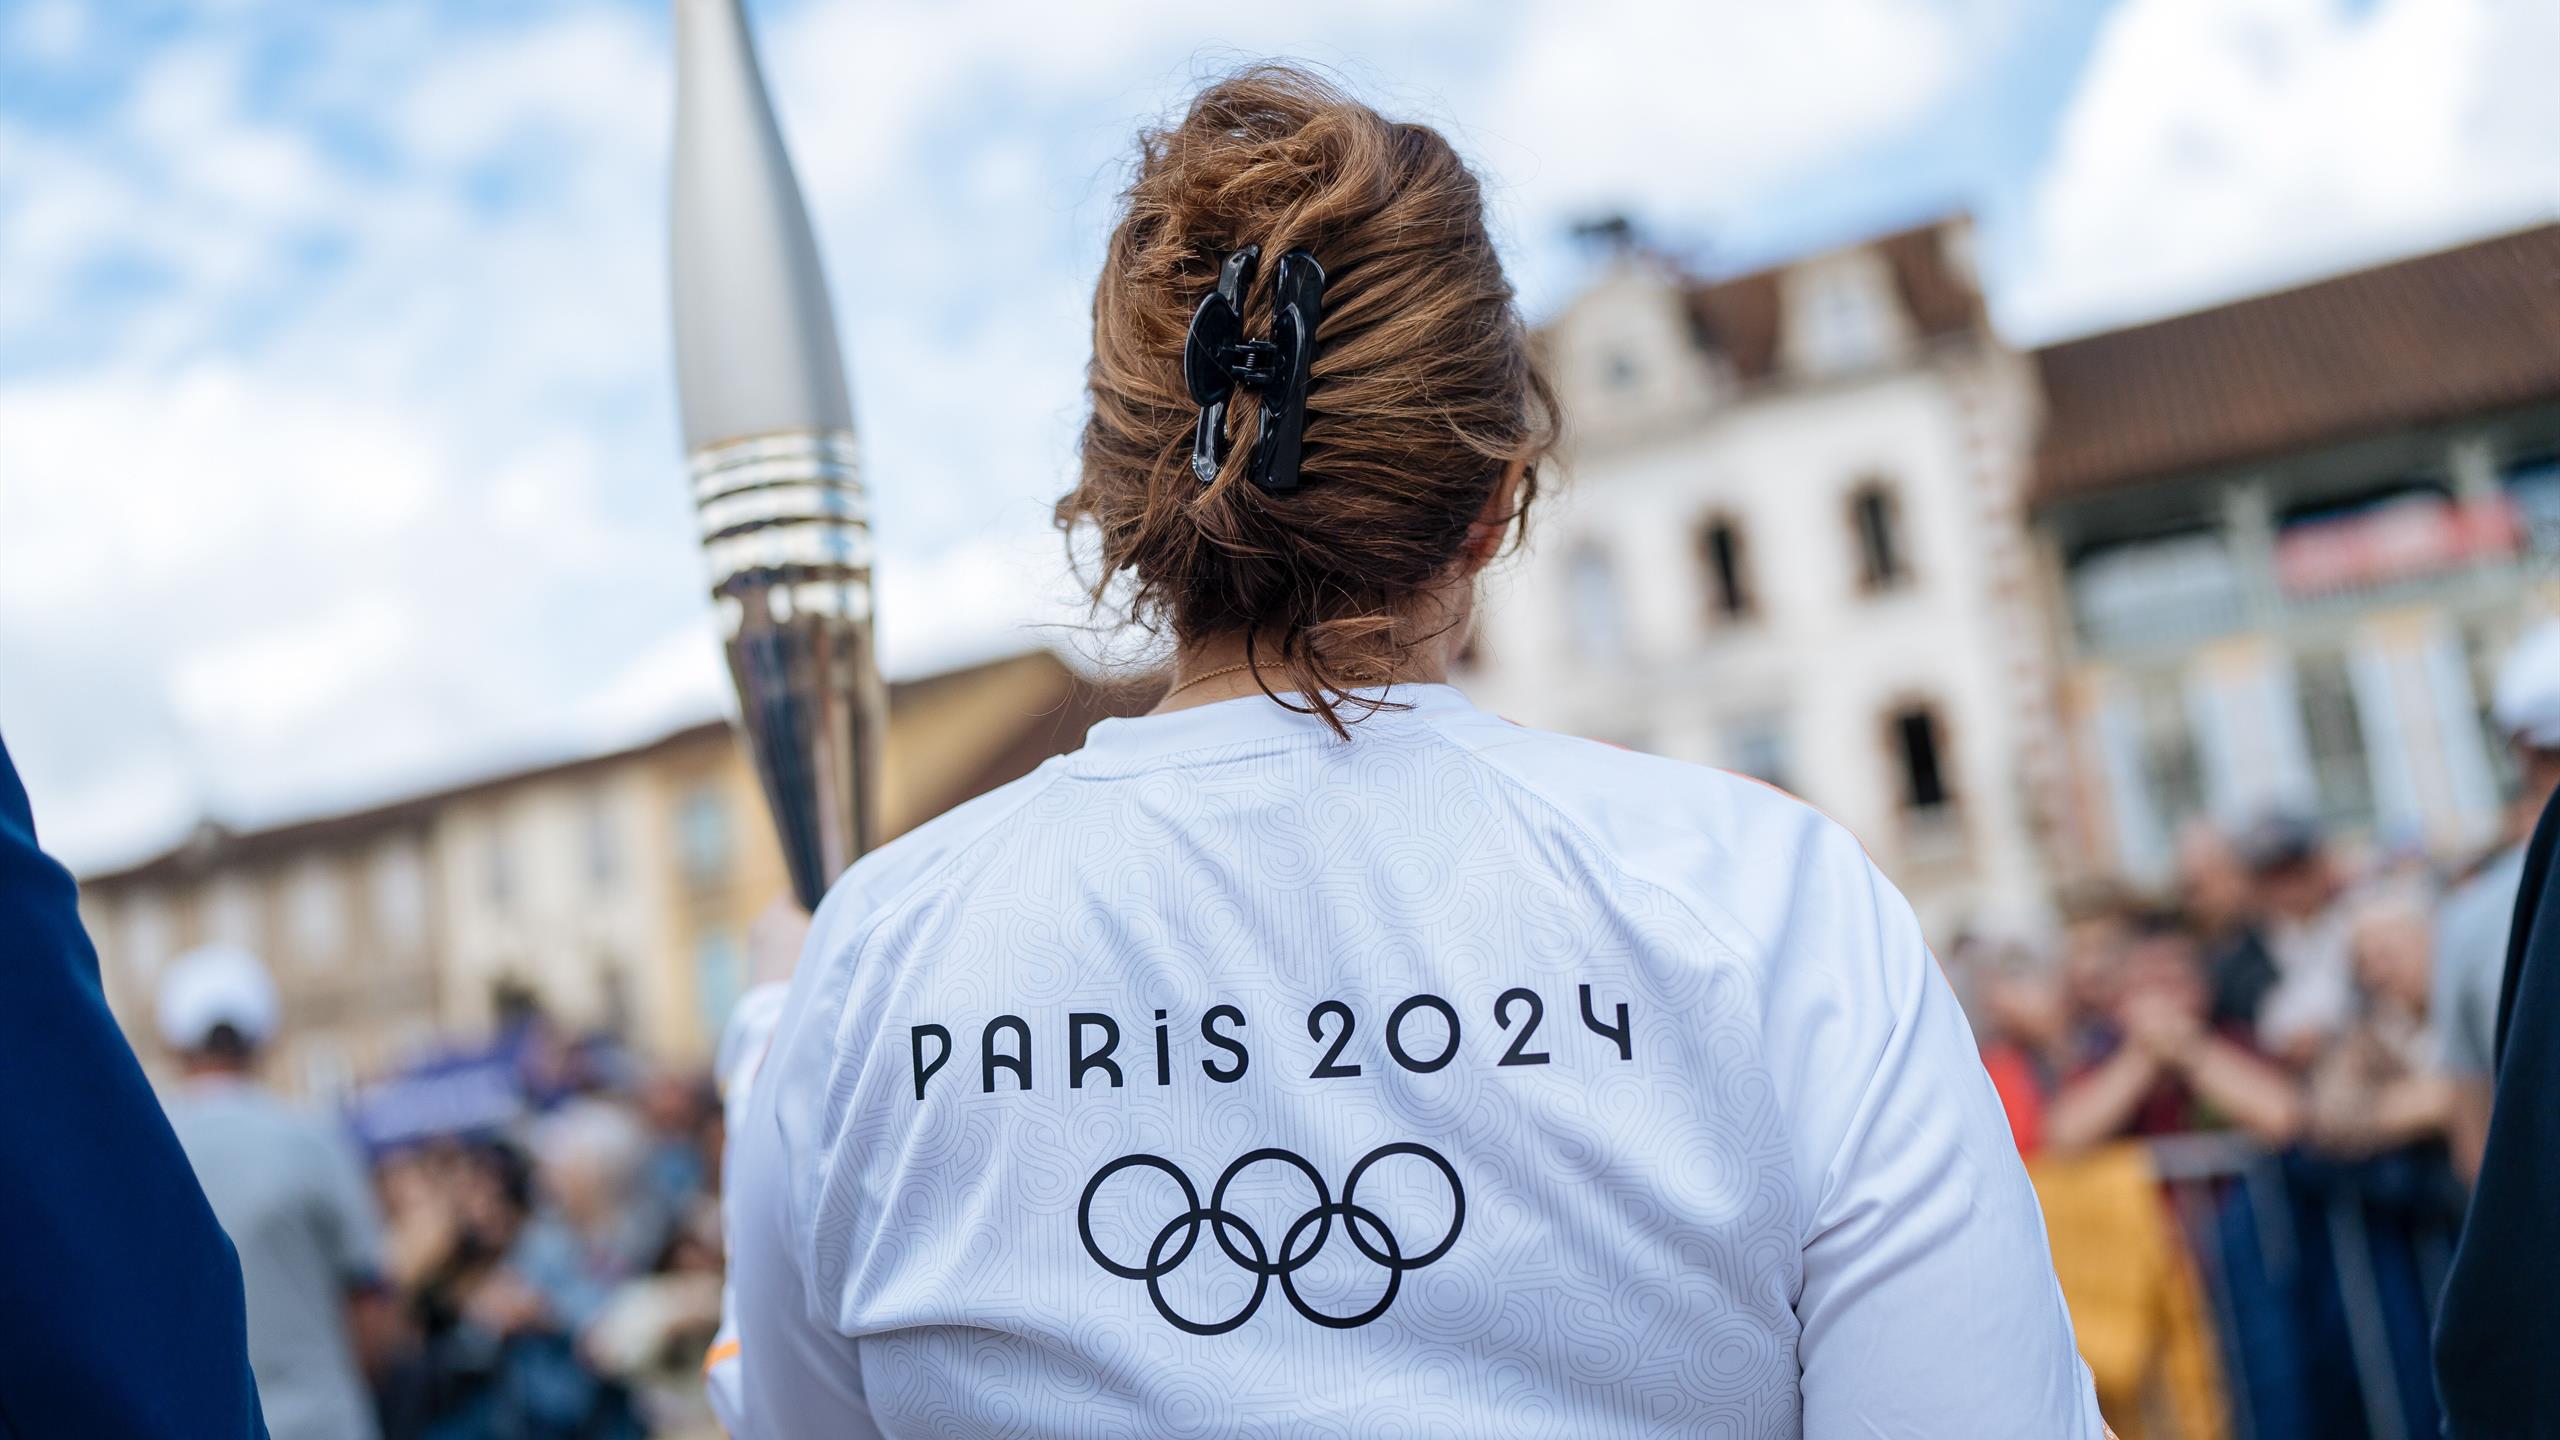 You are currently viewing JO Paris 2024 : Relais de la flamme olympique 2024